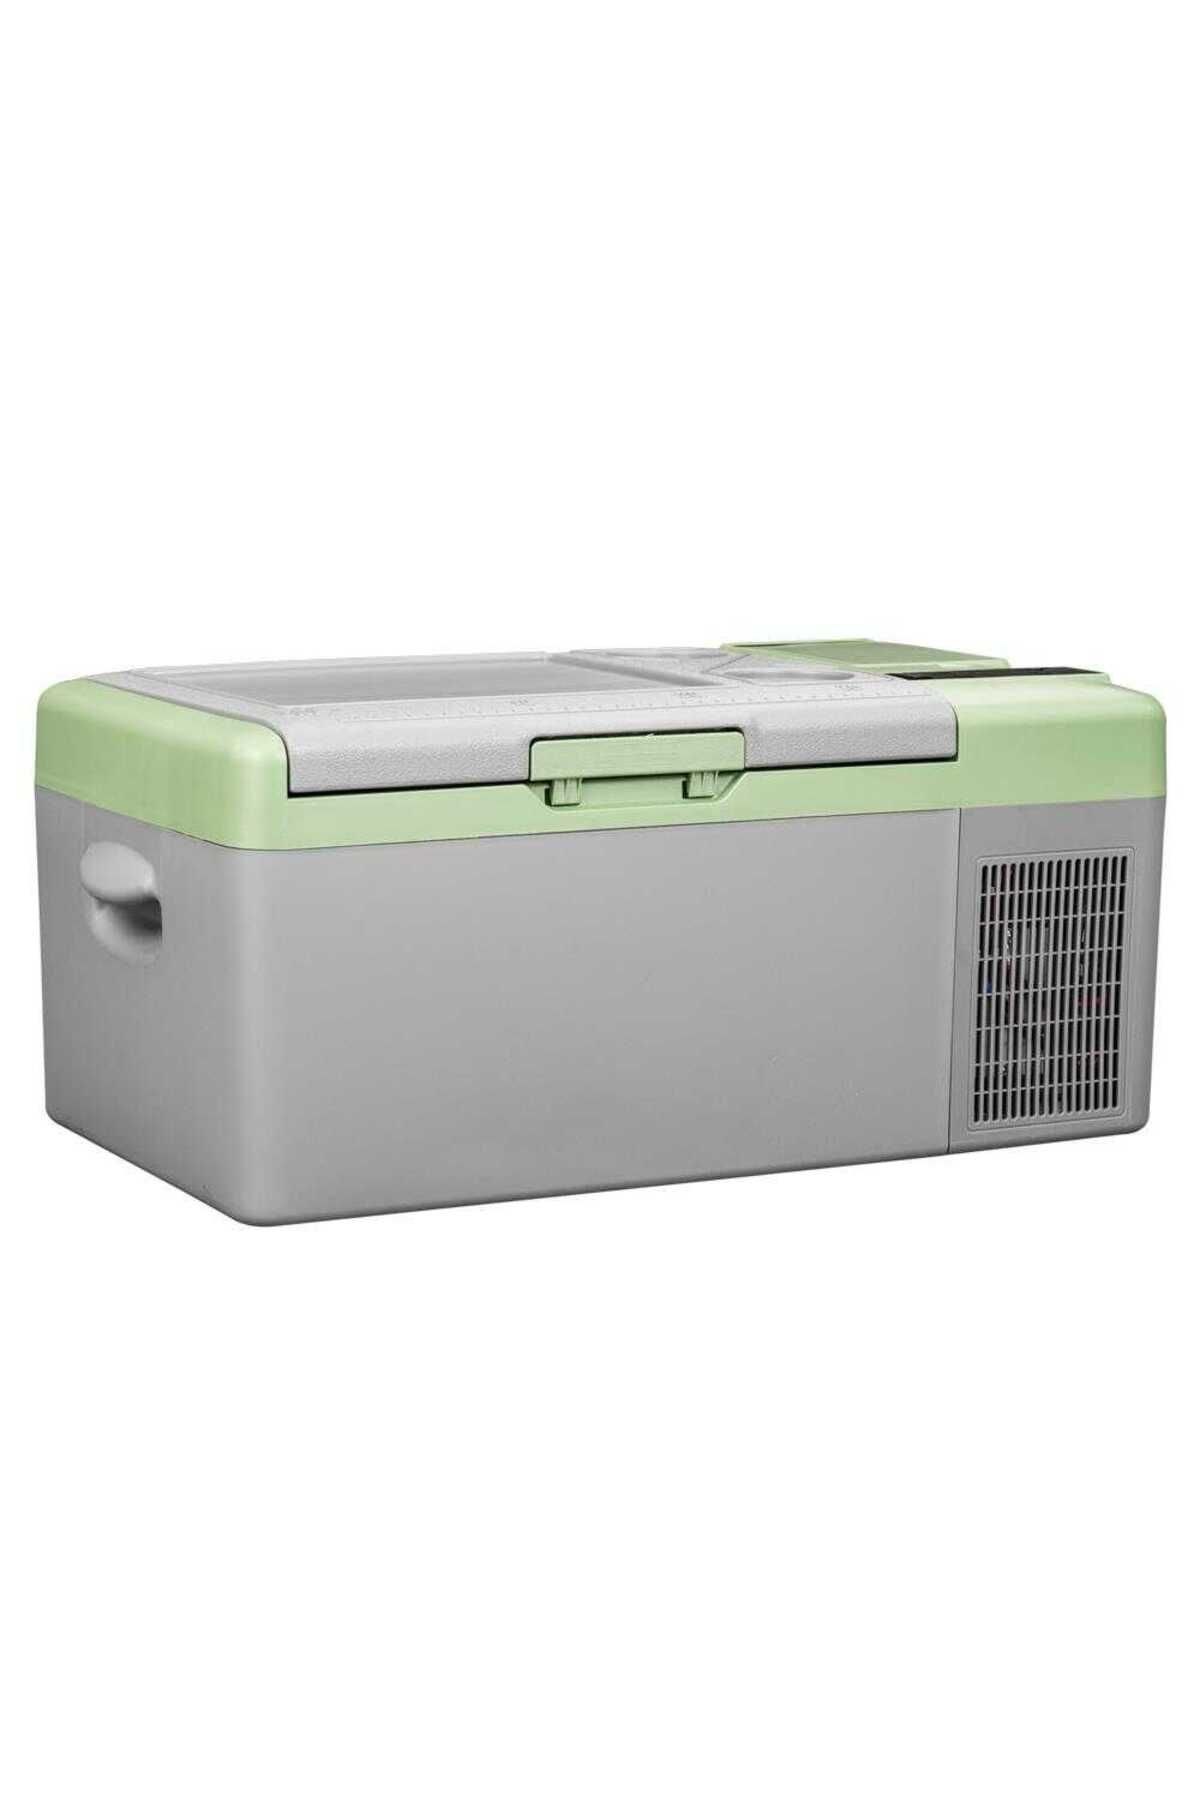 Icepeak Zagne Kompresörlü Buzdolabı 15.5 Litre-gri-yeşil